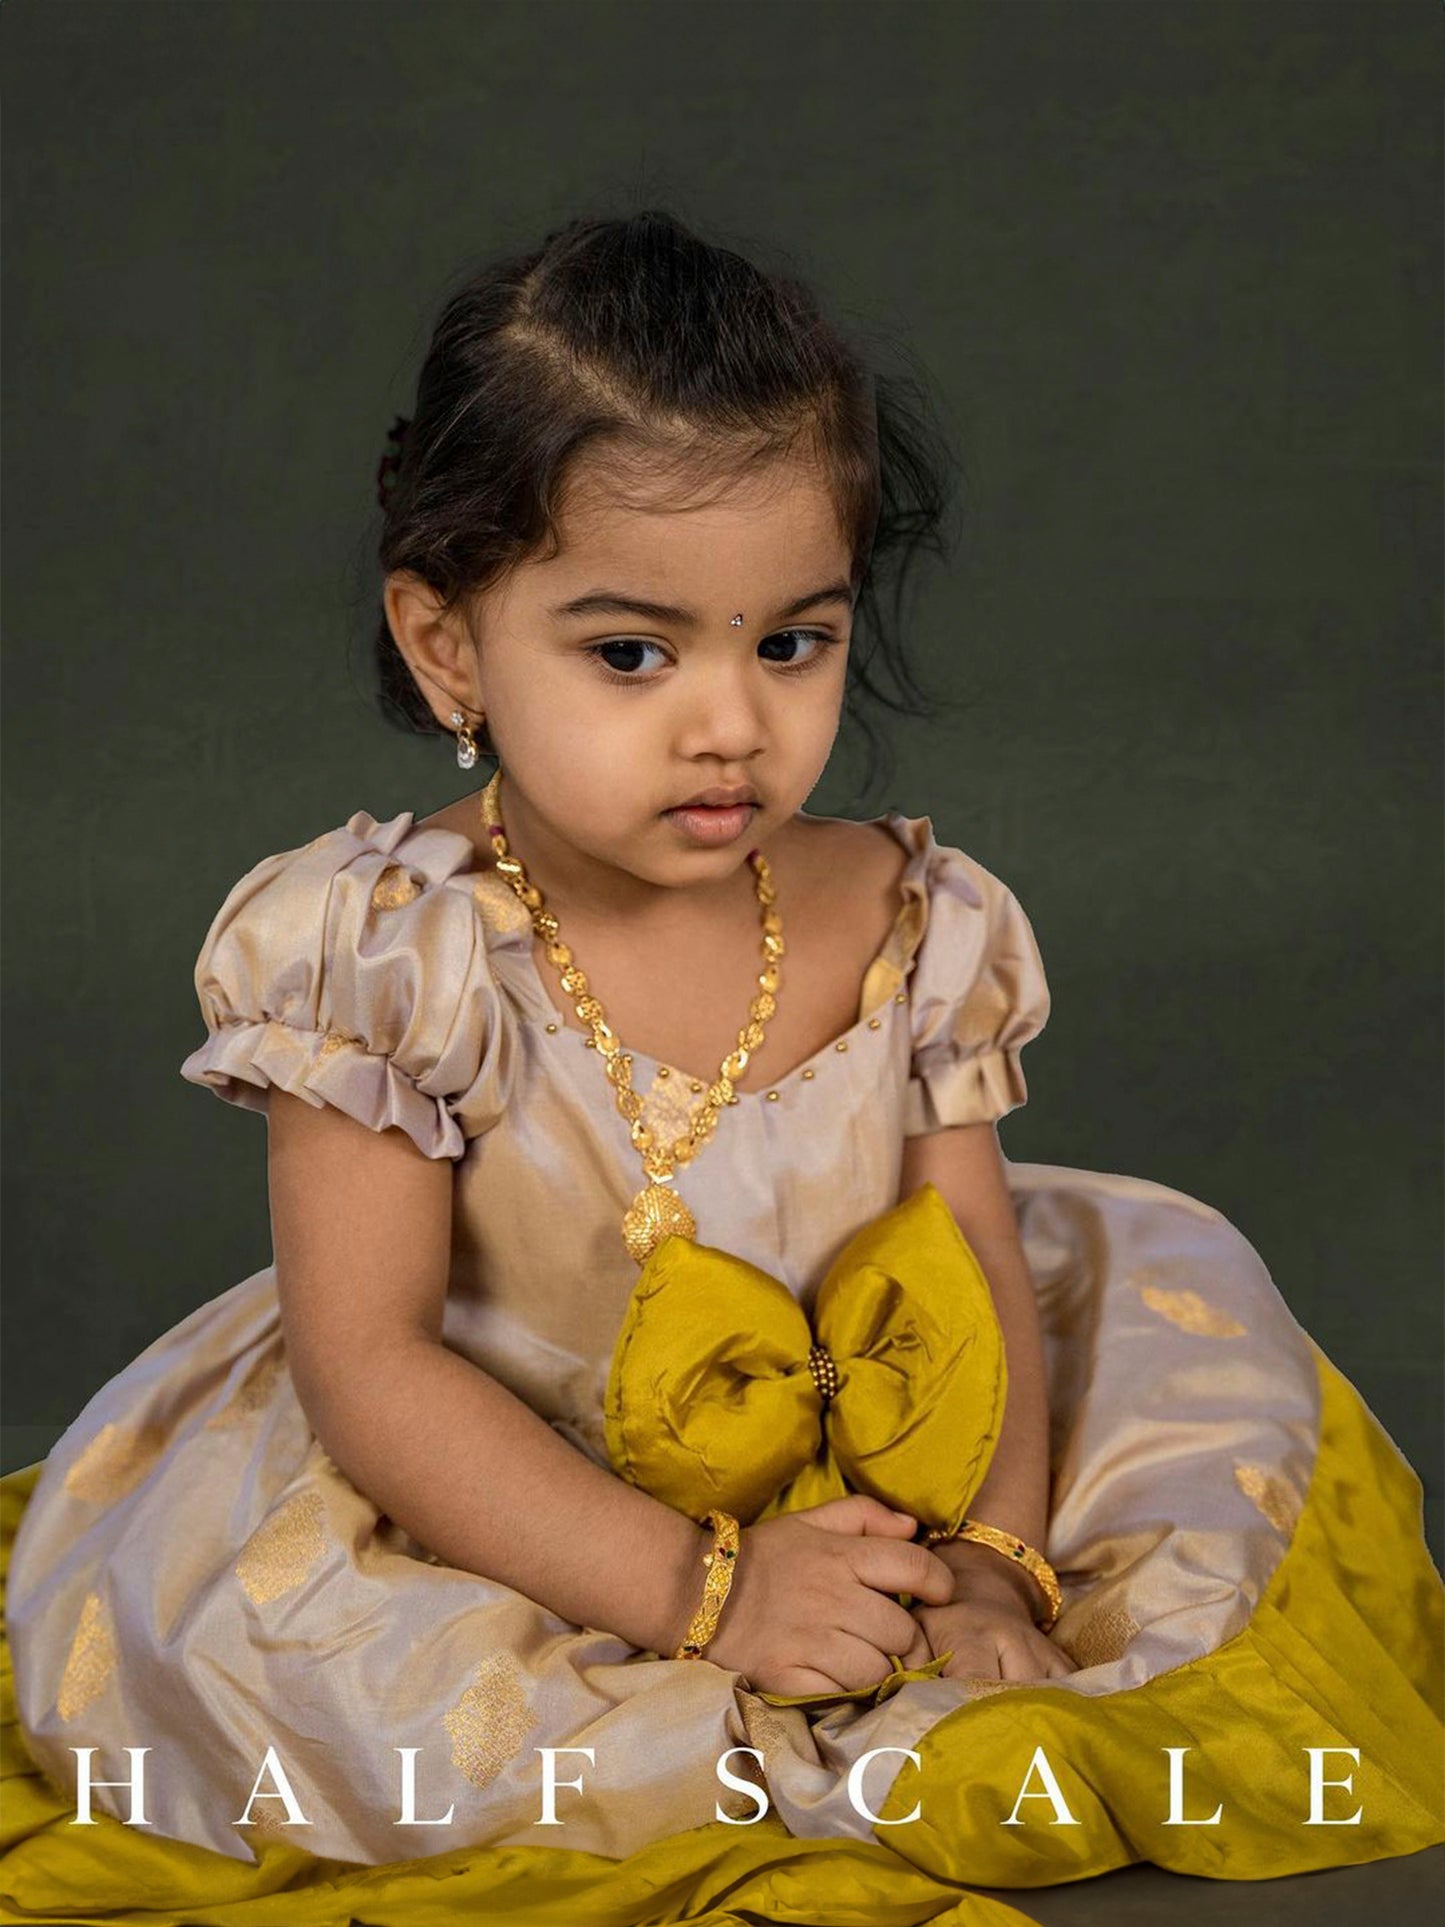 Indian Wear, Ethnic Wear for Girls | Little Muffet